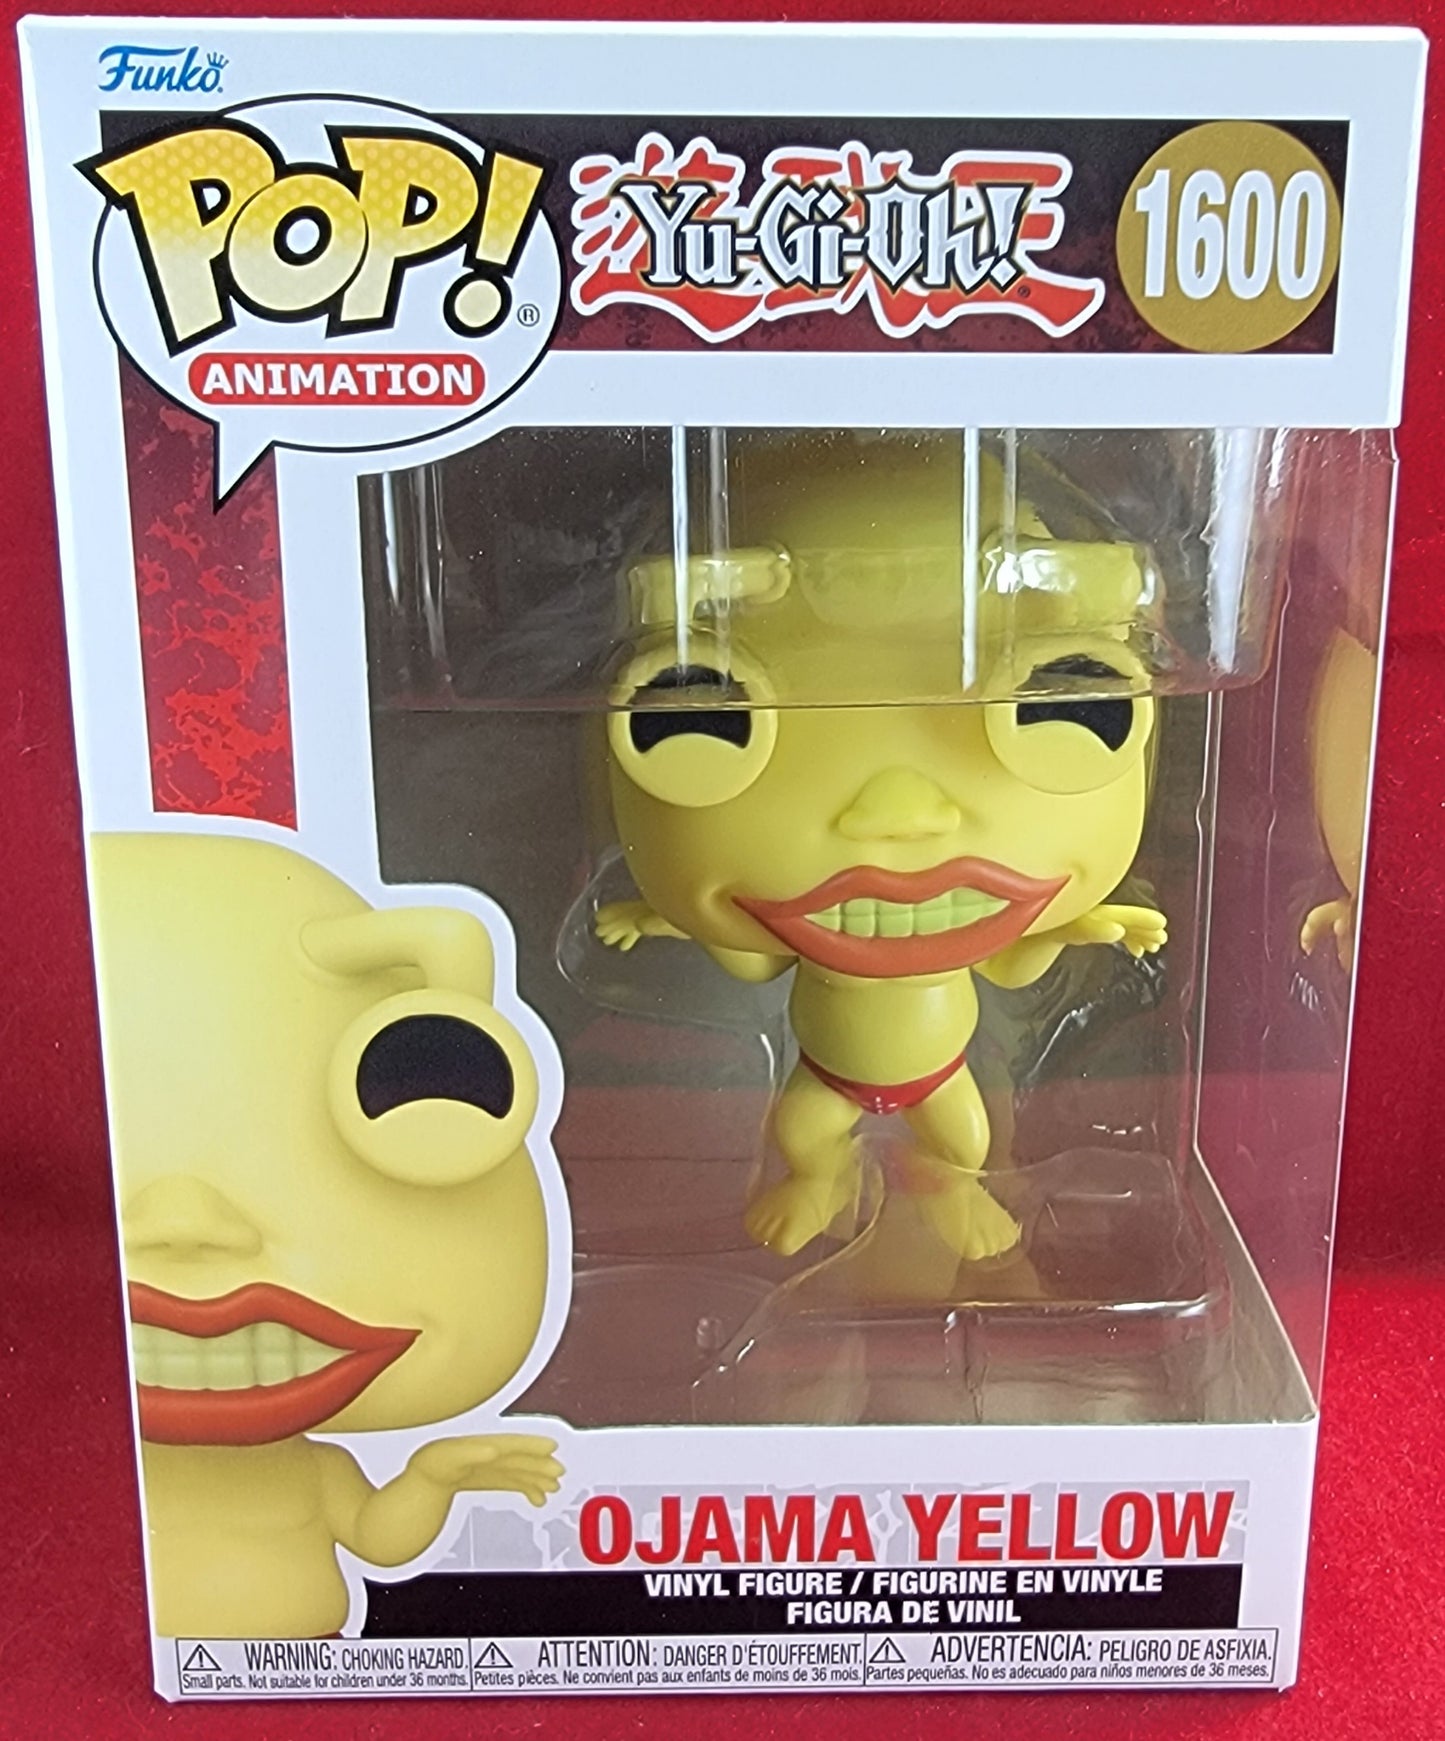 Ojama yellow funko # 1600 (nib)
With pop protector